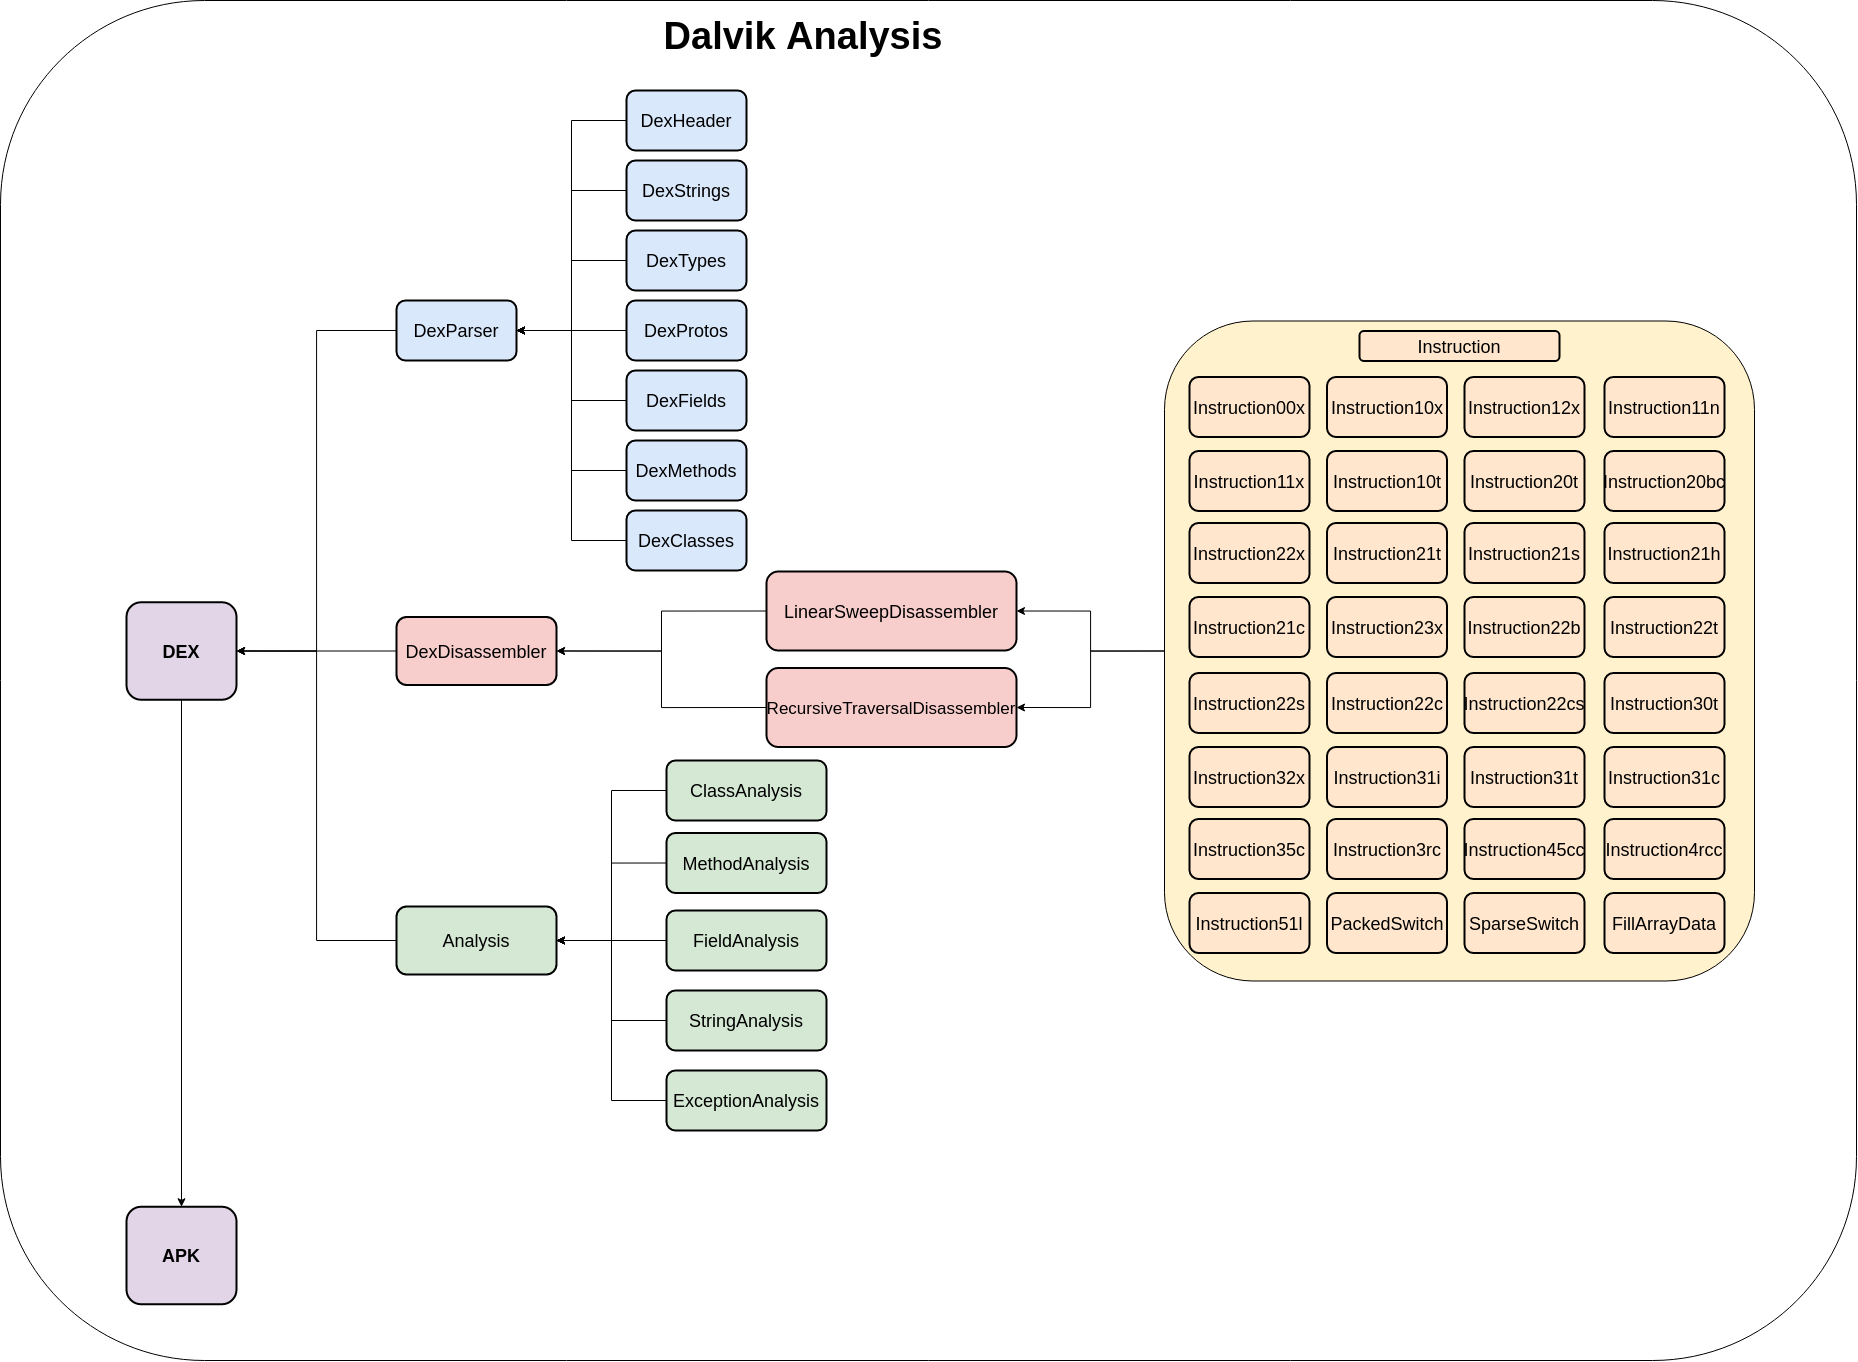 DEX Analysis Architecture